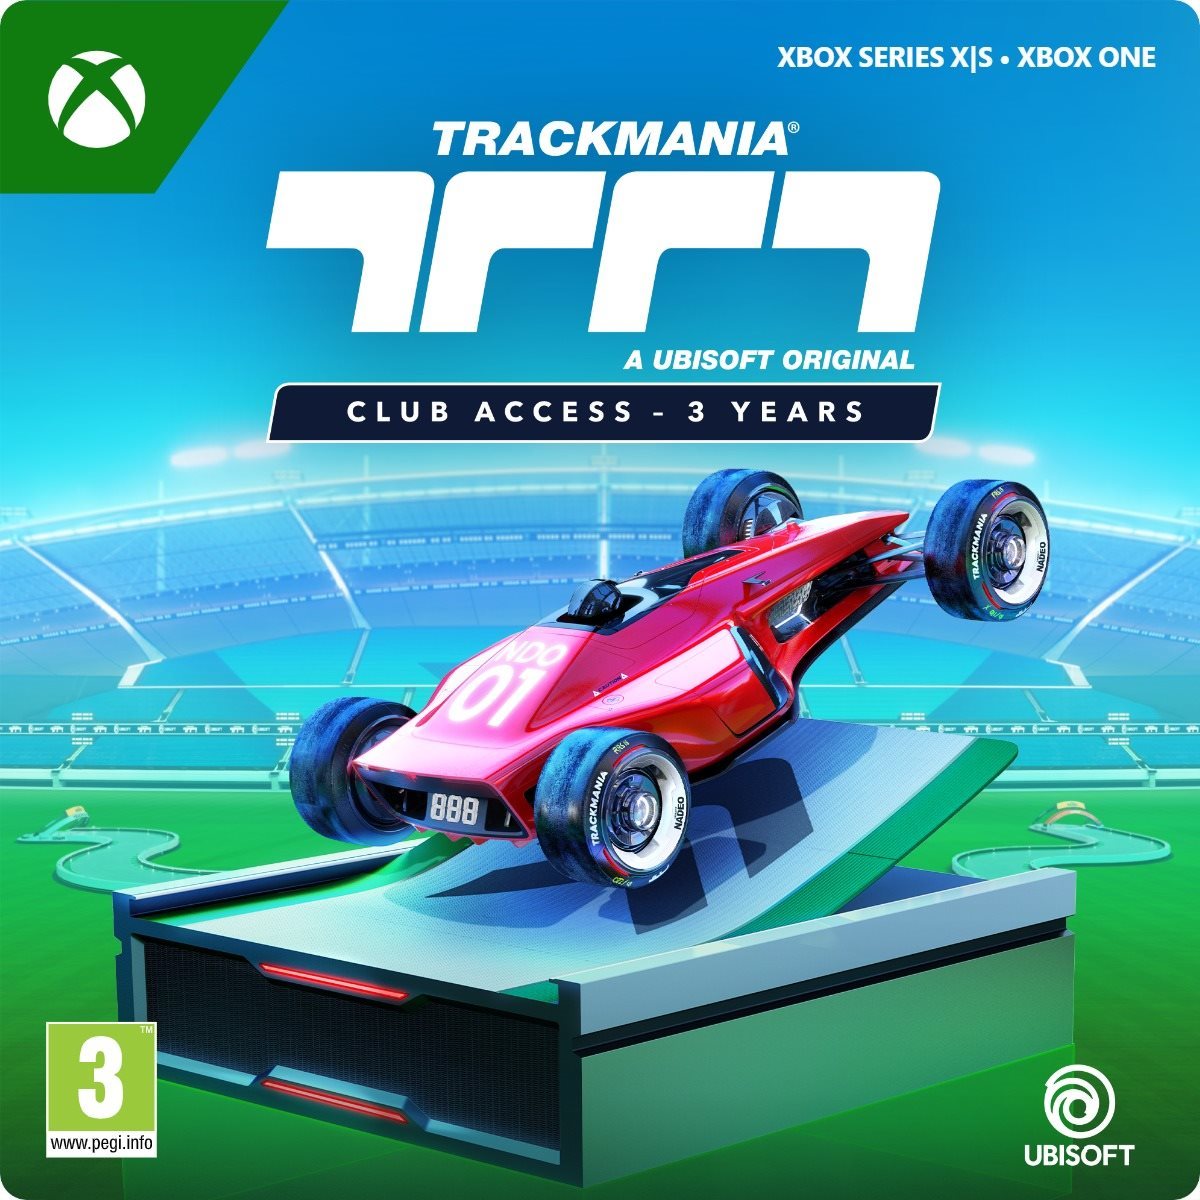 Trackmania Club Access - 3 Year - Xbox DIGITAL